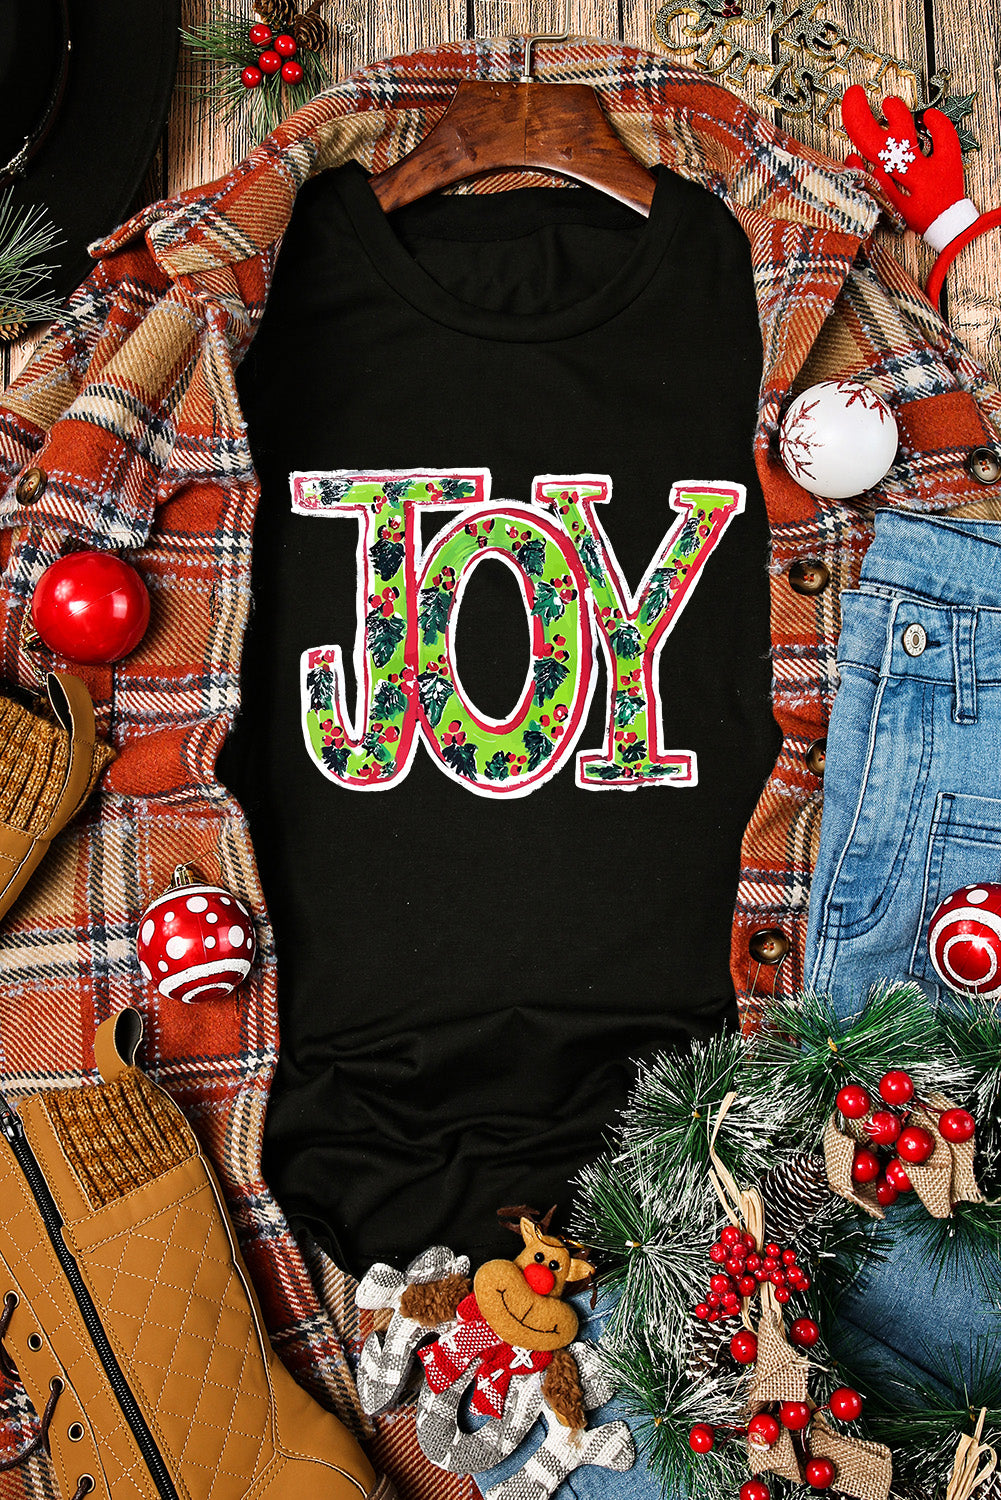 Black JOY Holly Printed Christmas Fashion Tee